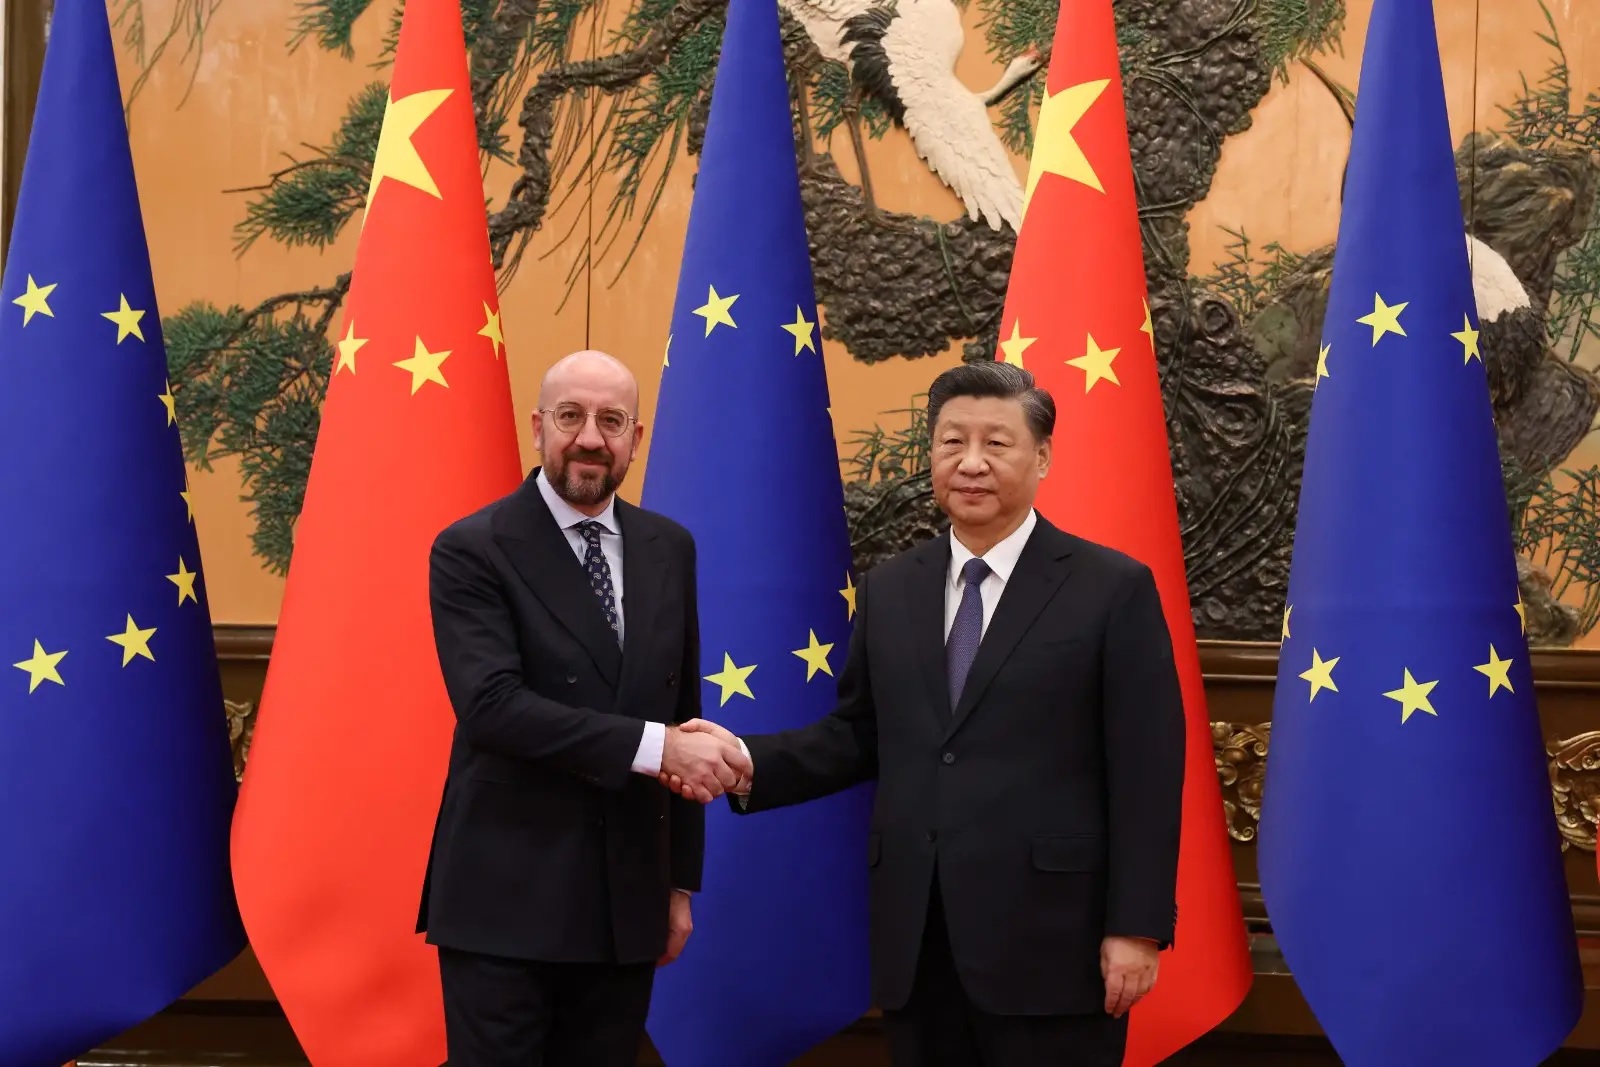 Dù vẫn duy trì những hợp tác, nhưng quan hệ giữa EU và Trung Quốc đang ngày càng rạn nứt